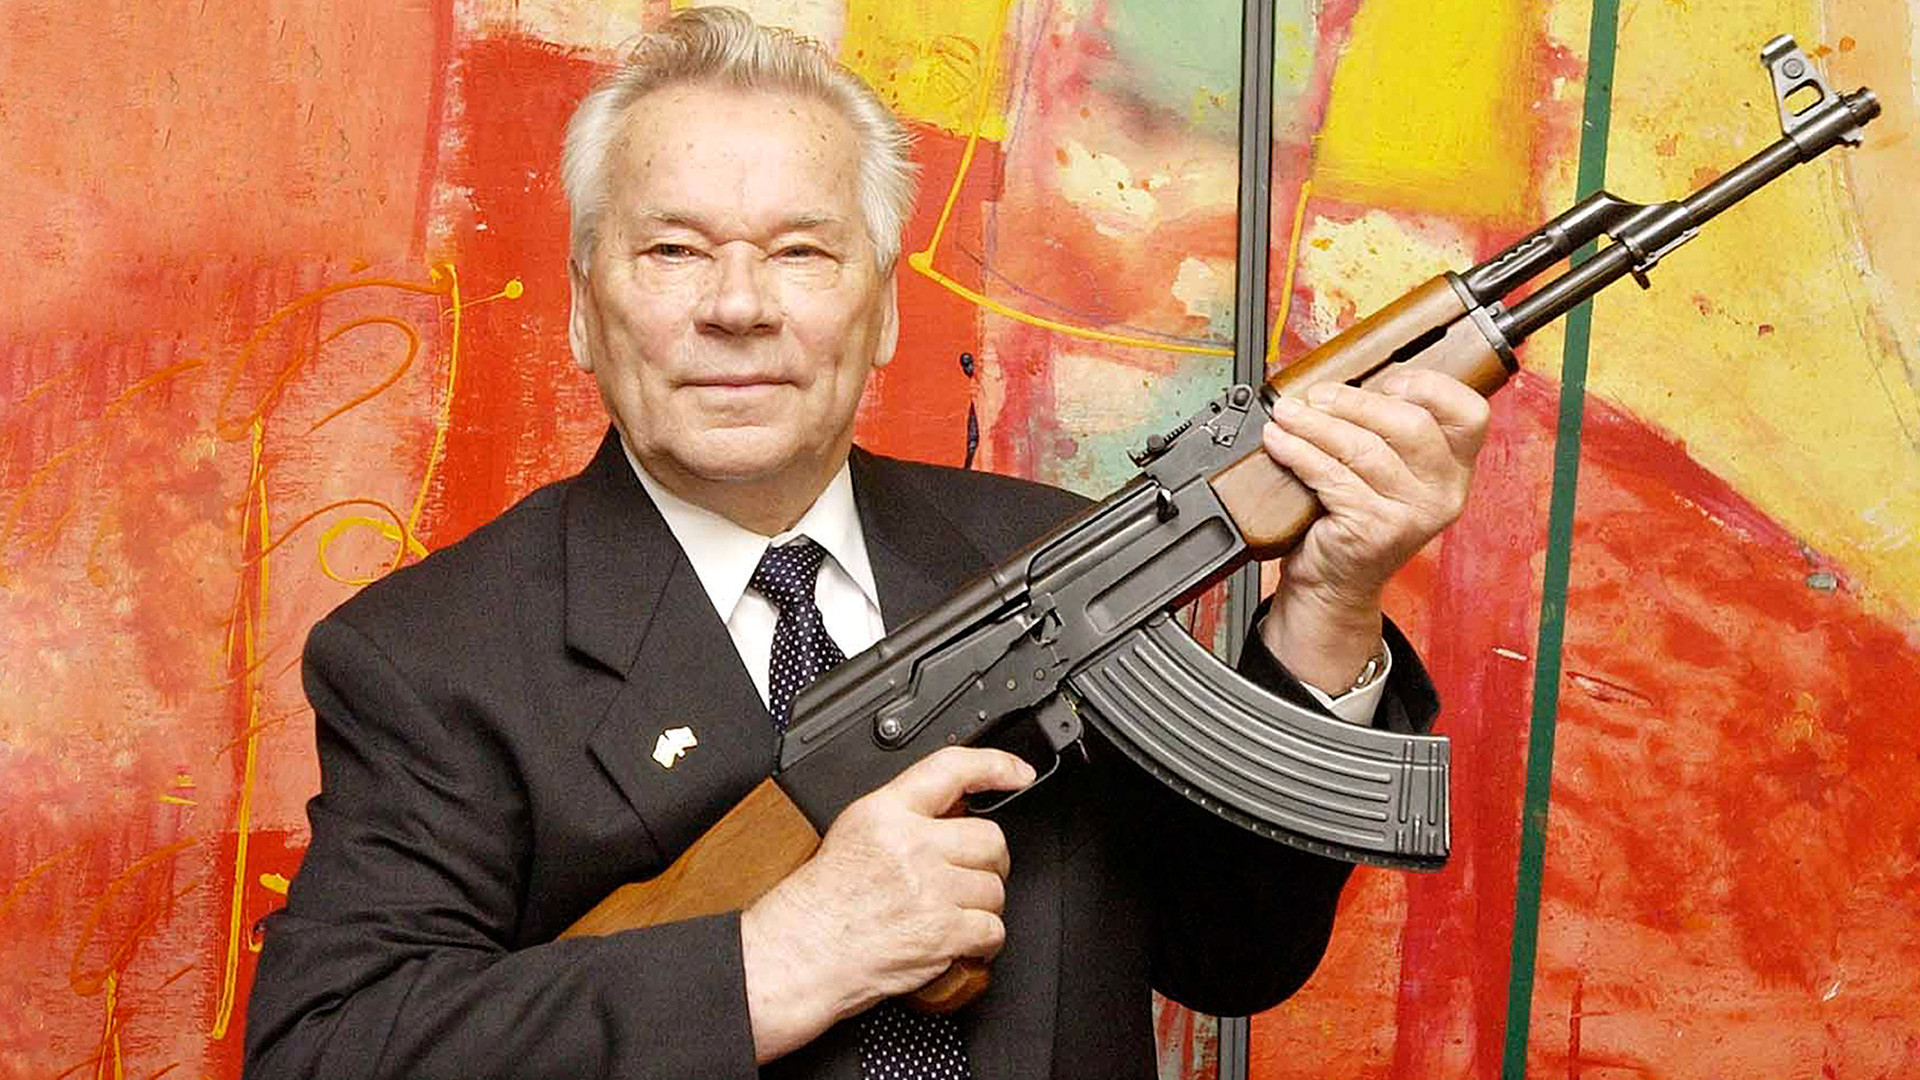 Mijaíl Kaláshnikov con su creación, el AK-47.
